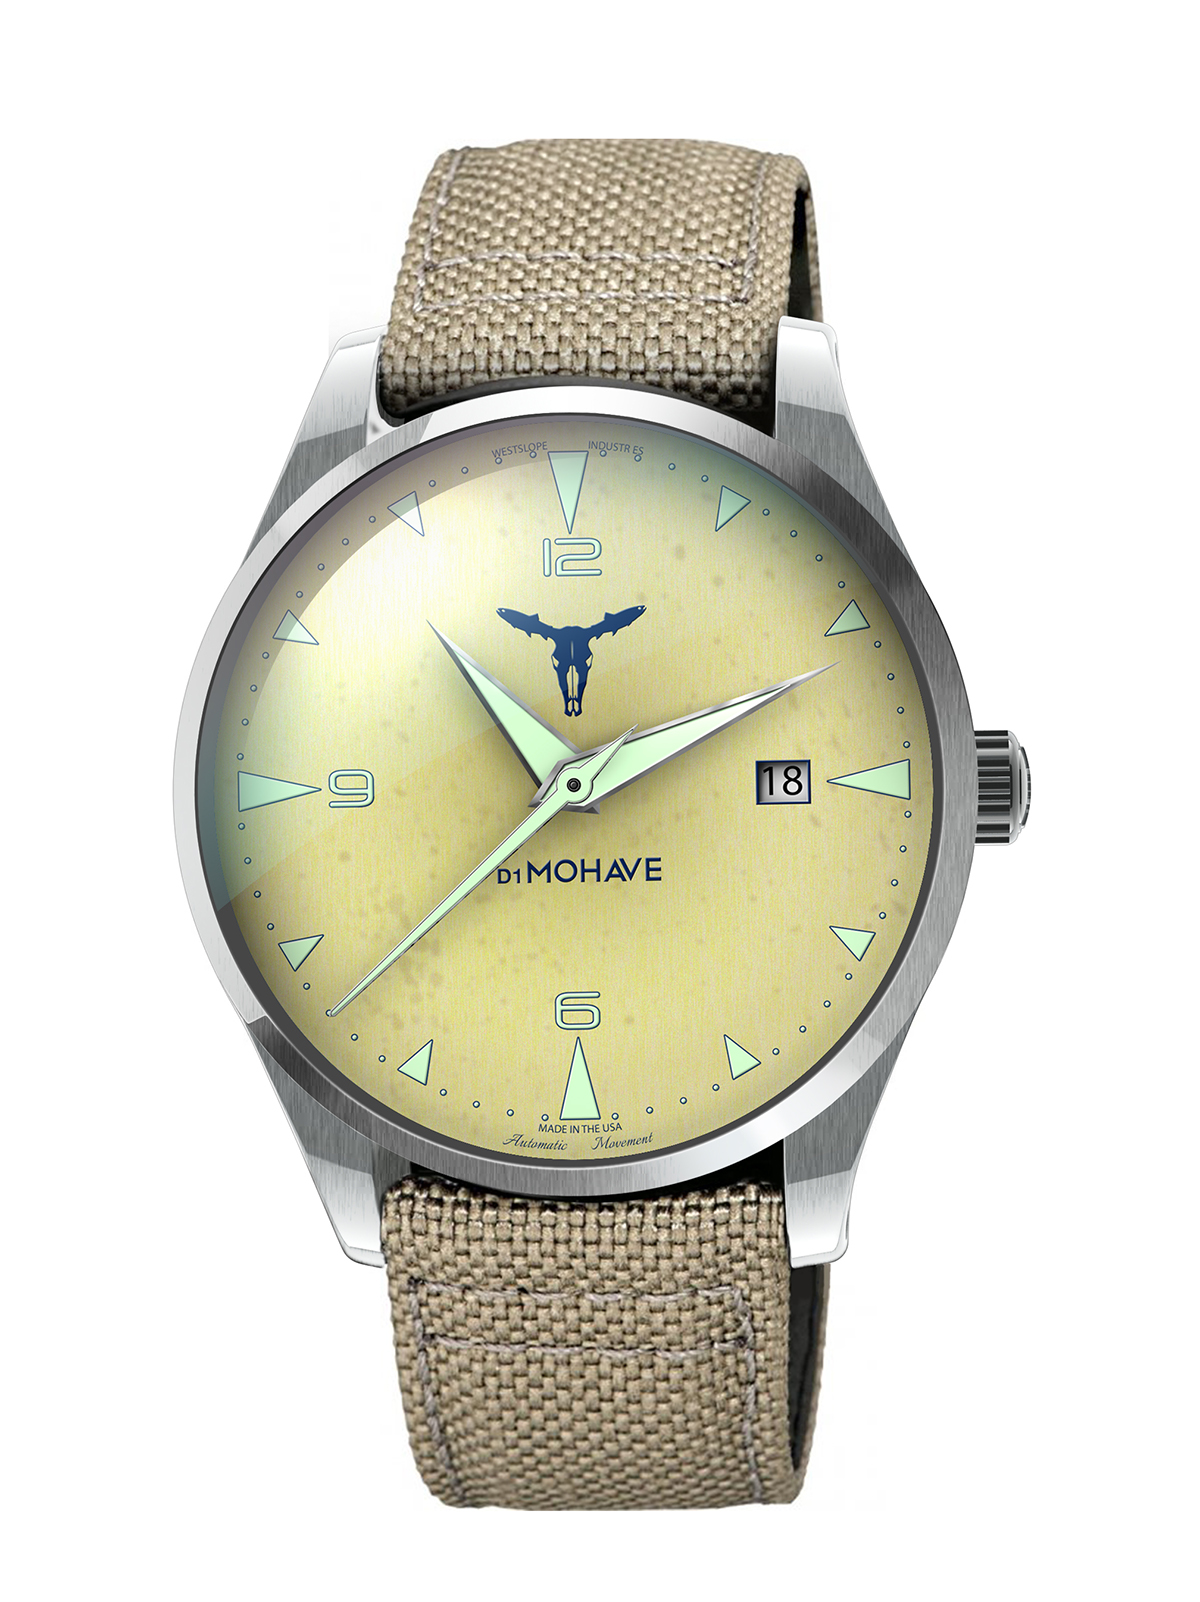 Shabtai hirshberg watch design